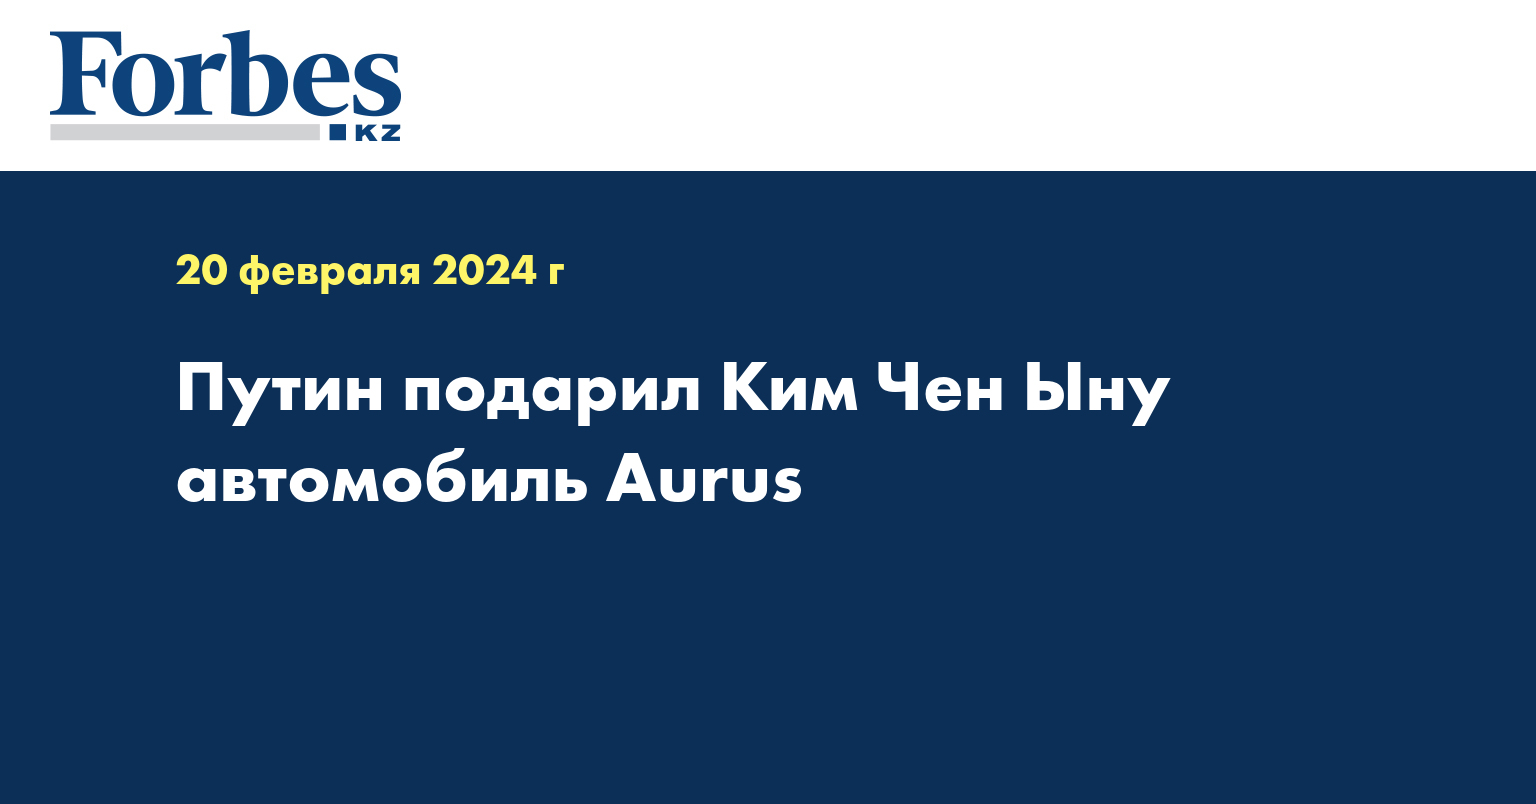 Путин подарил Ким Чен Ыну автомобиль Aurus